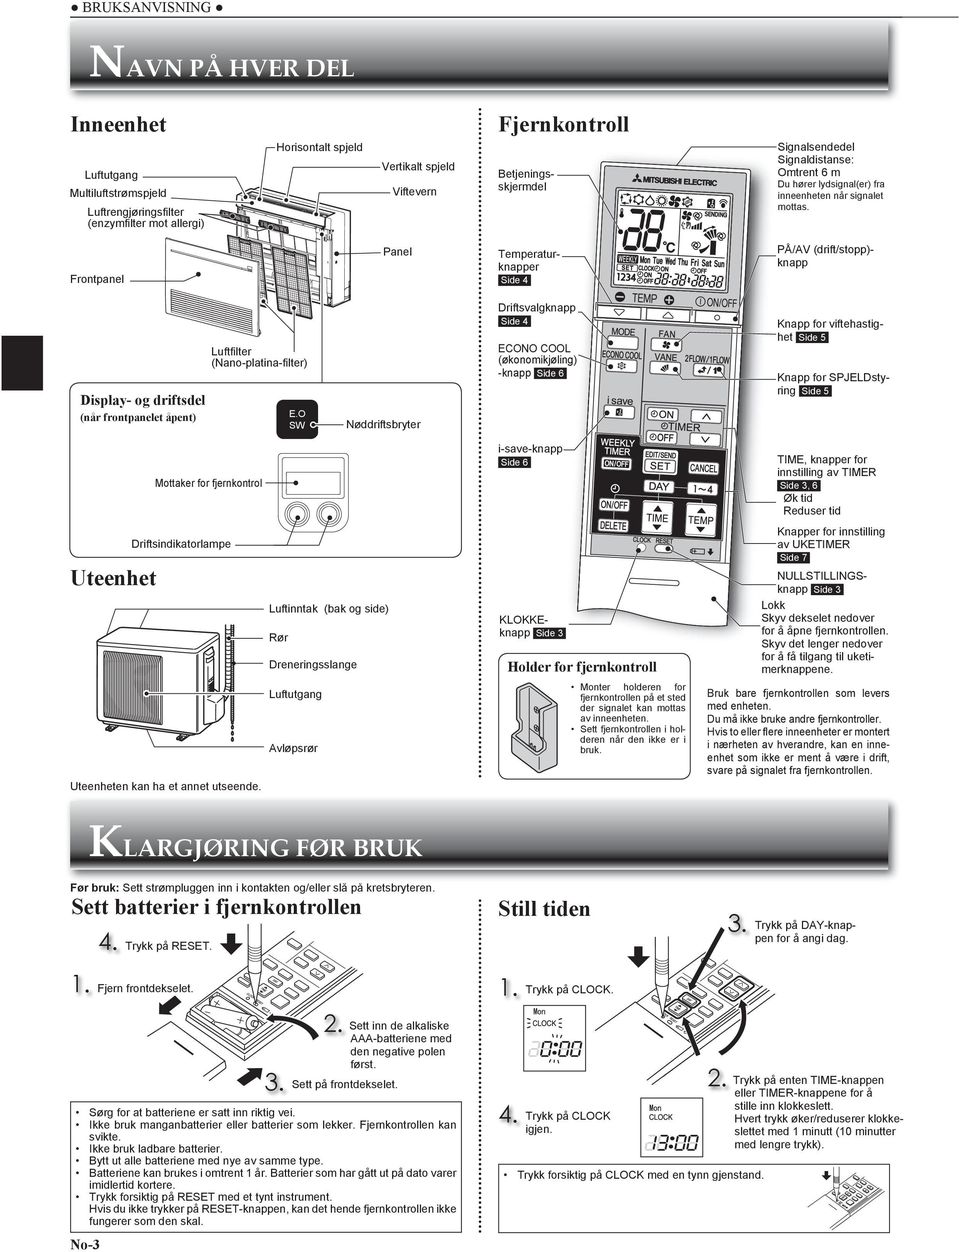 Frontpanel Panel Temperaturknapper Side 4 PÅ/AV (drift/stopp)- knapp Display- og driftsdel (når frontpanelet åpent) Luftfi lter (Nano-platina-fi lter) E.